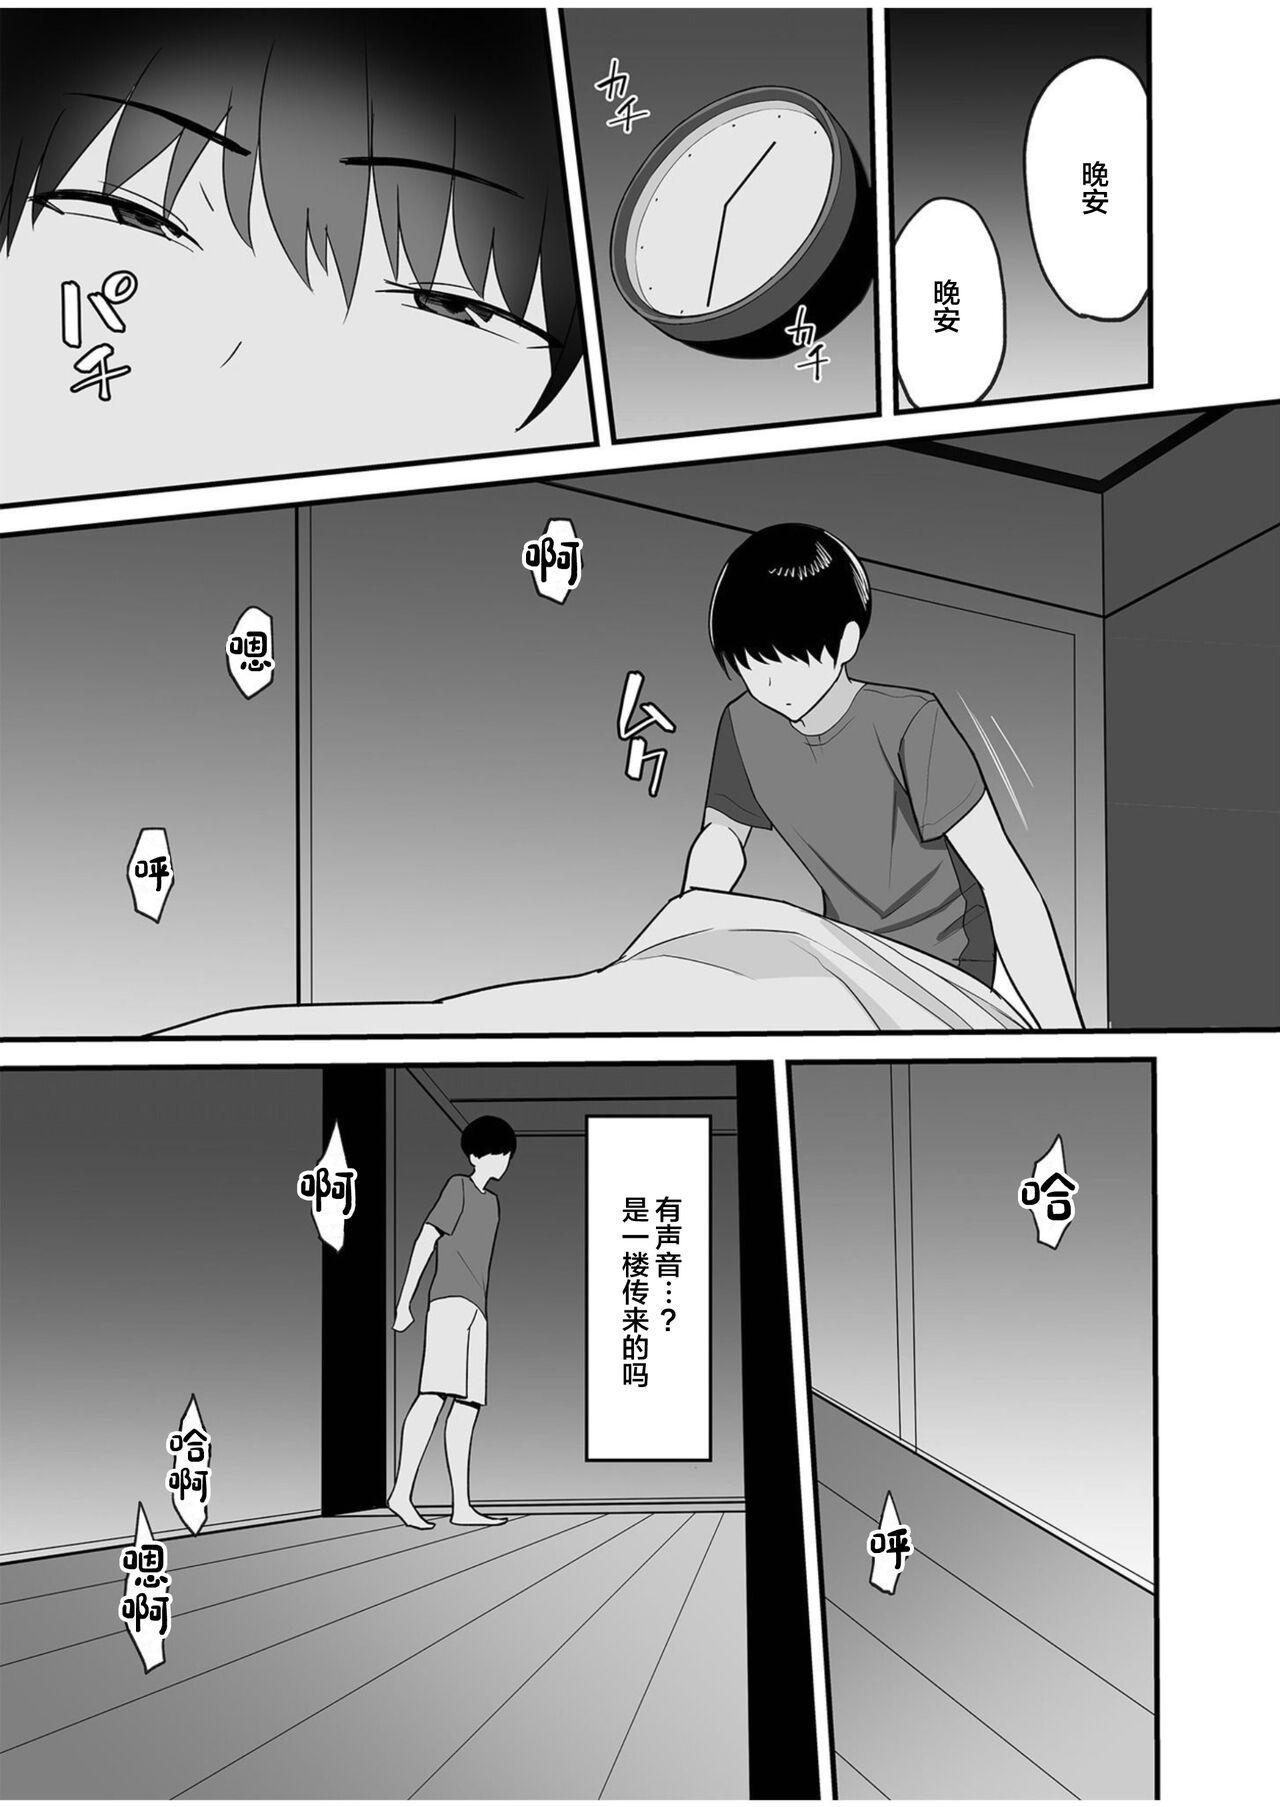 Hardcore Porn Gibo-san wa boku no mono 1 18yo - Page 8